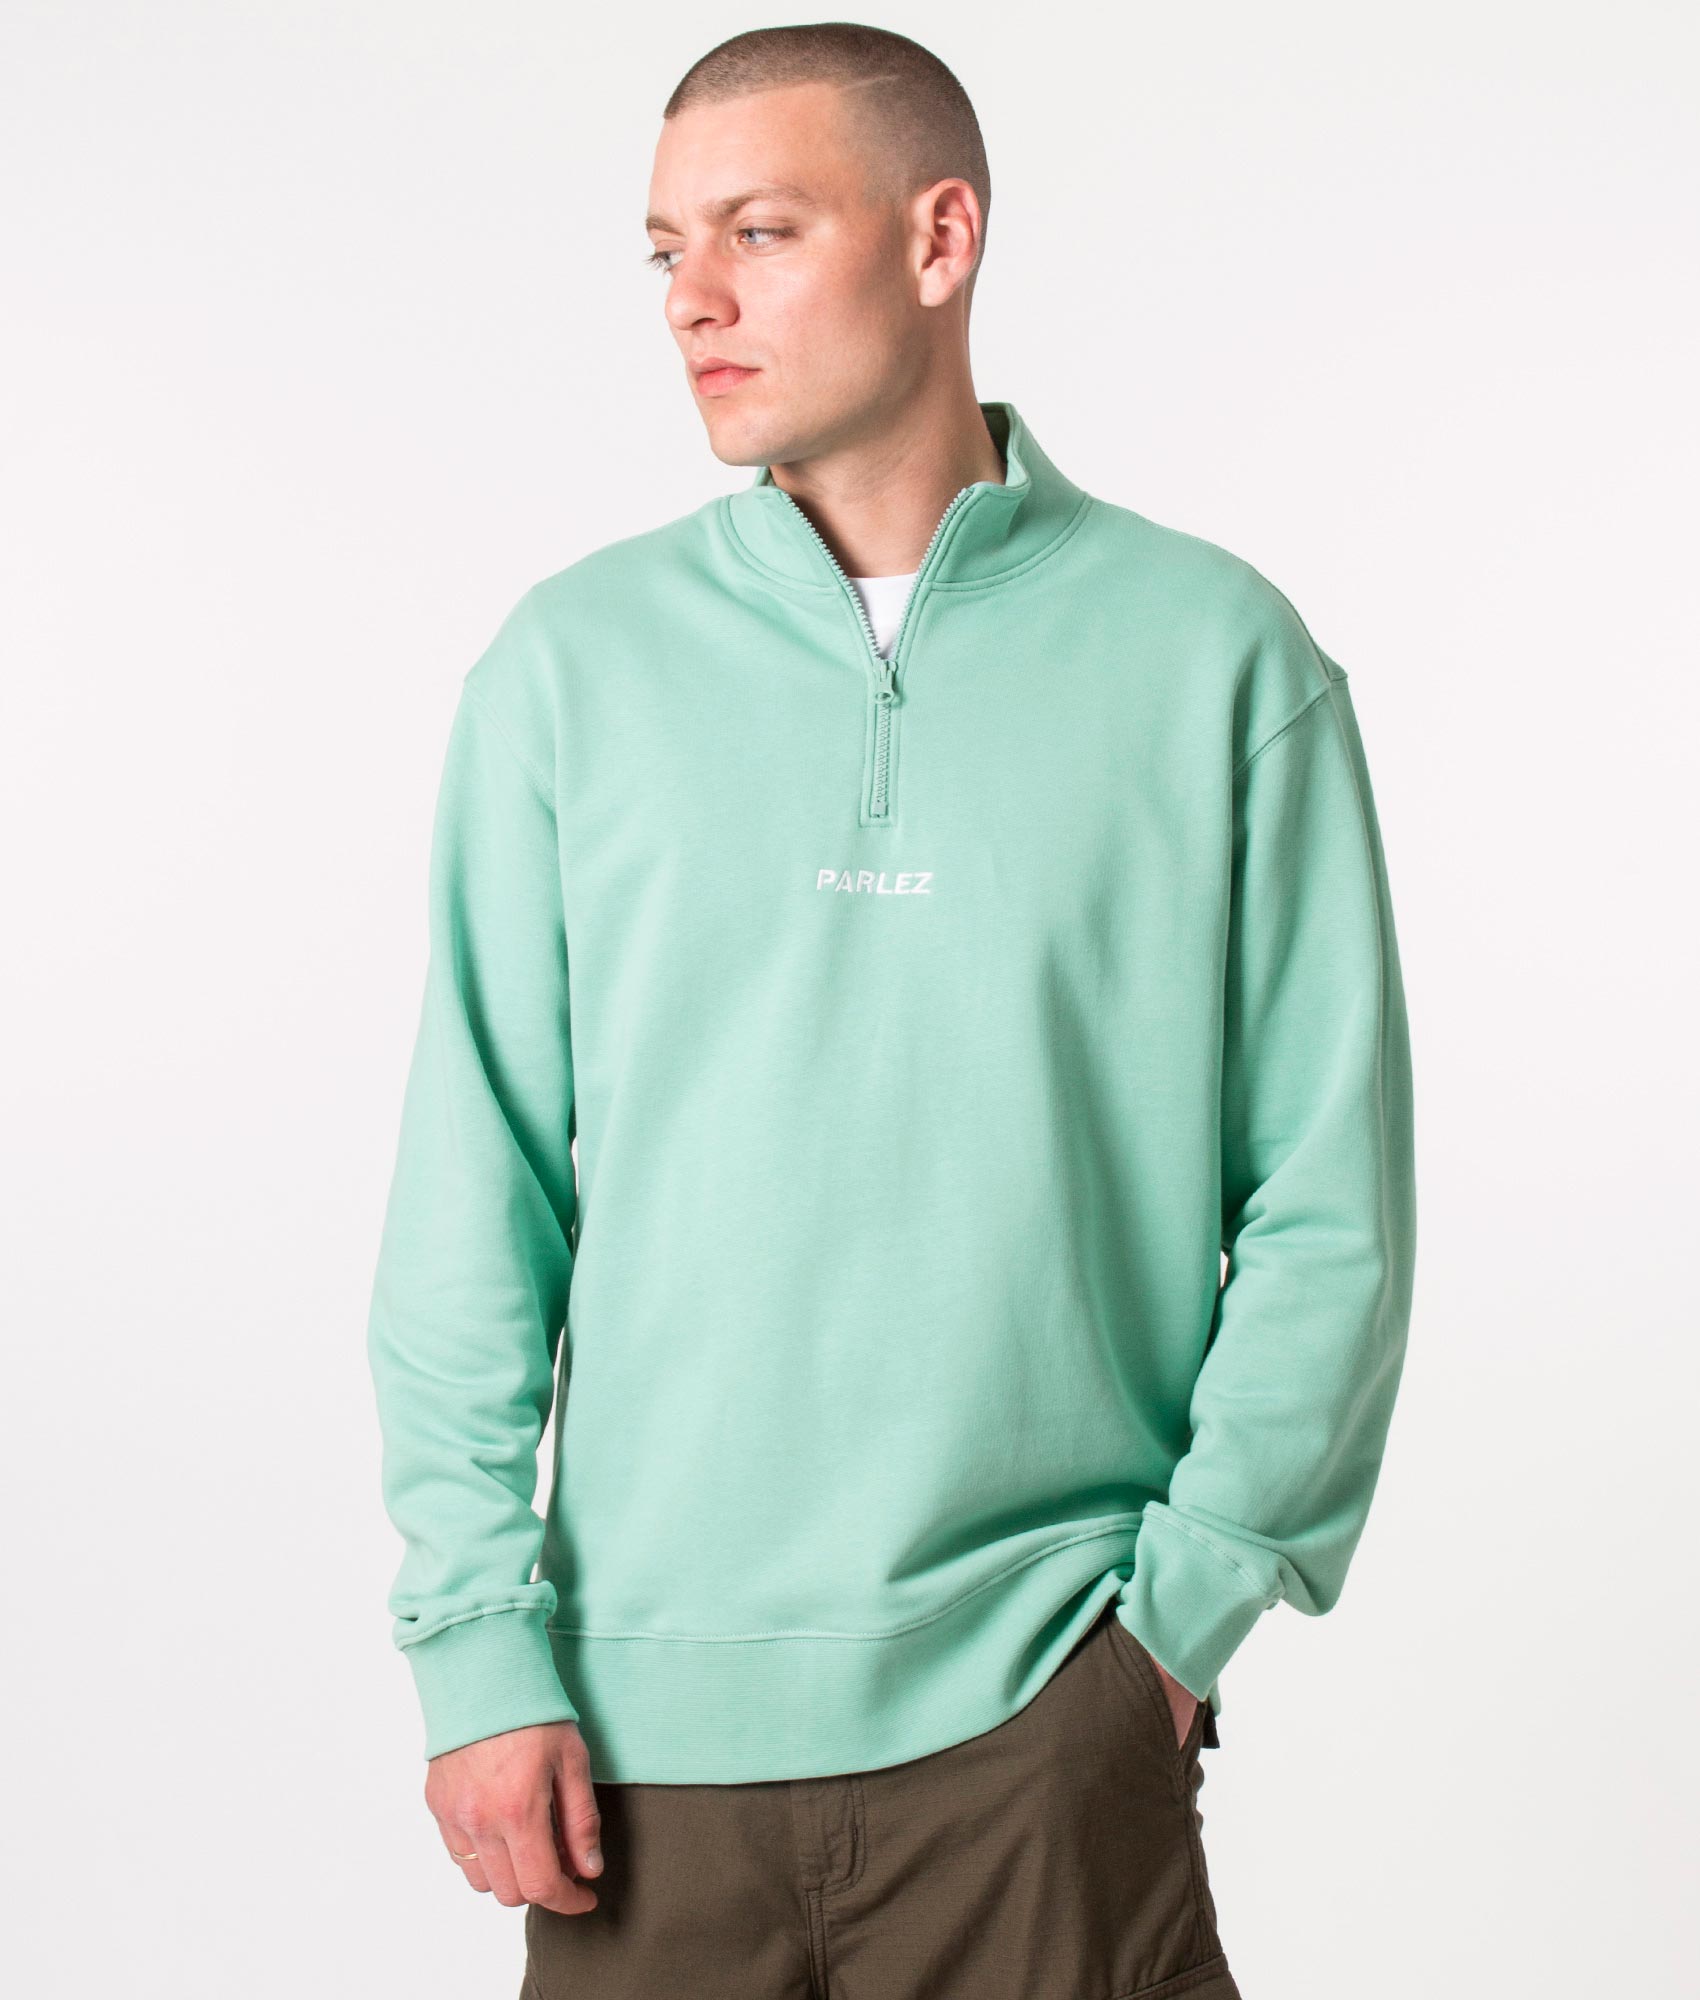 Parlez Mens Quarter Zip Ladsun Sweatshirt - Colour: Dusty Aqua - Size: Large